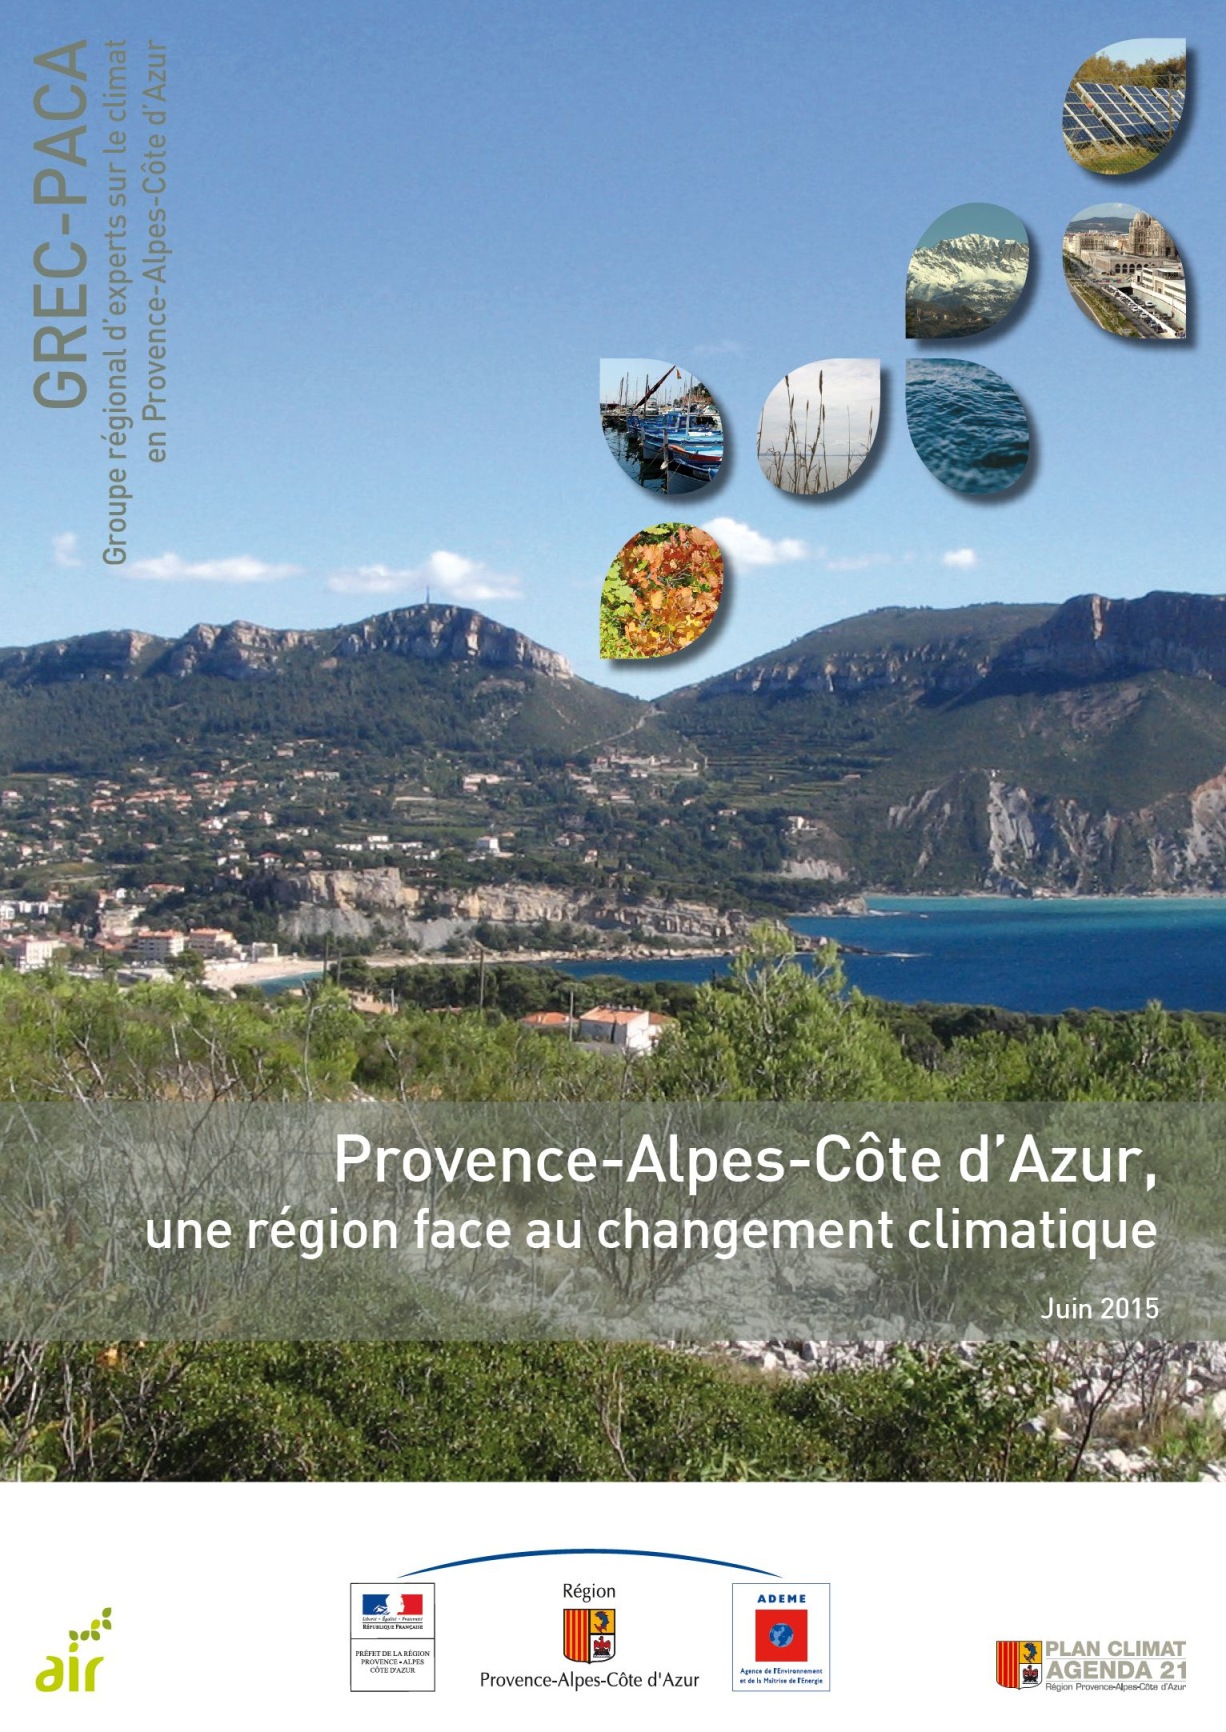 Carte) : le plan 'Vigilance moustique tigre' bientôt lancé en Vaucluse et  en Provence - Dossier